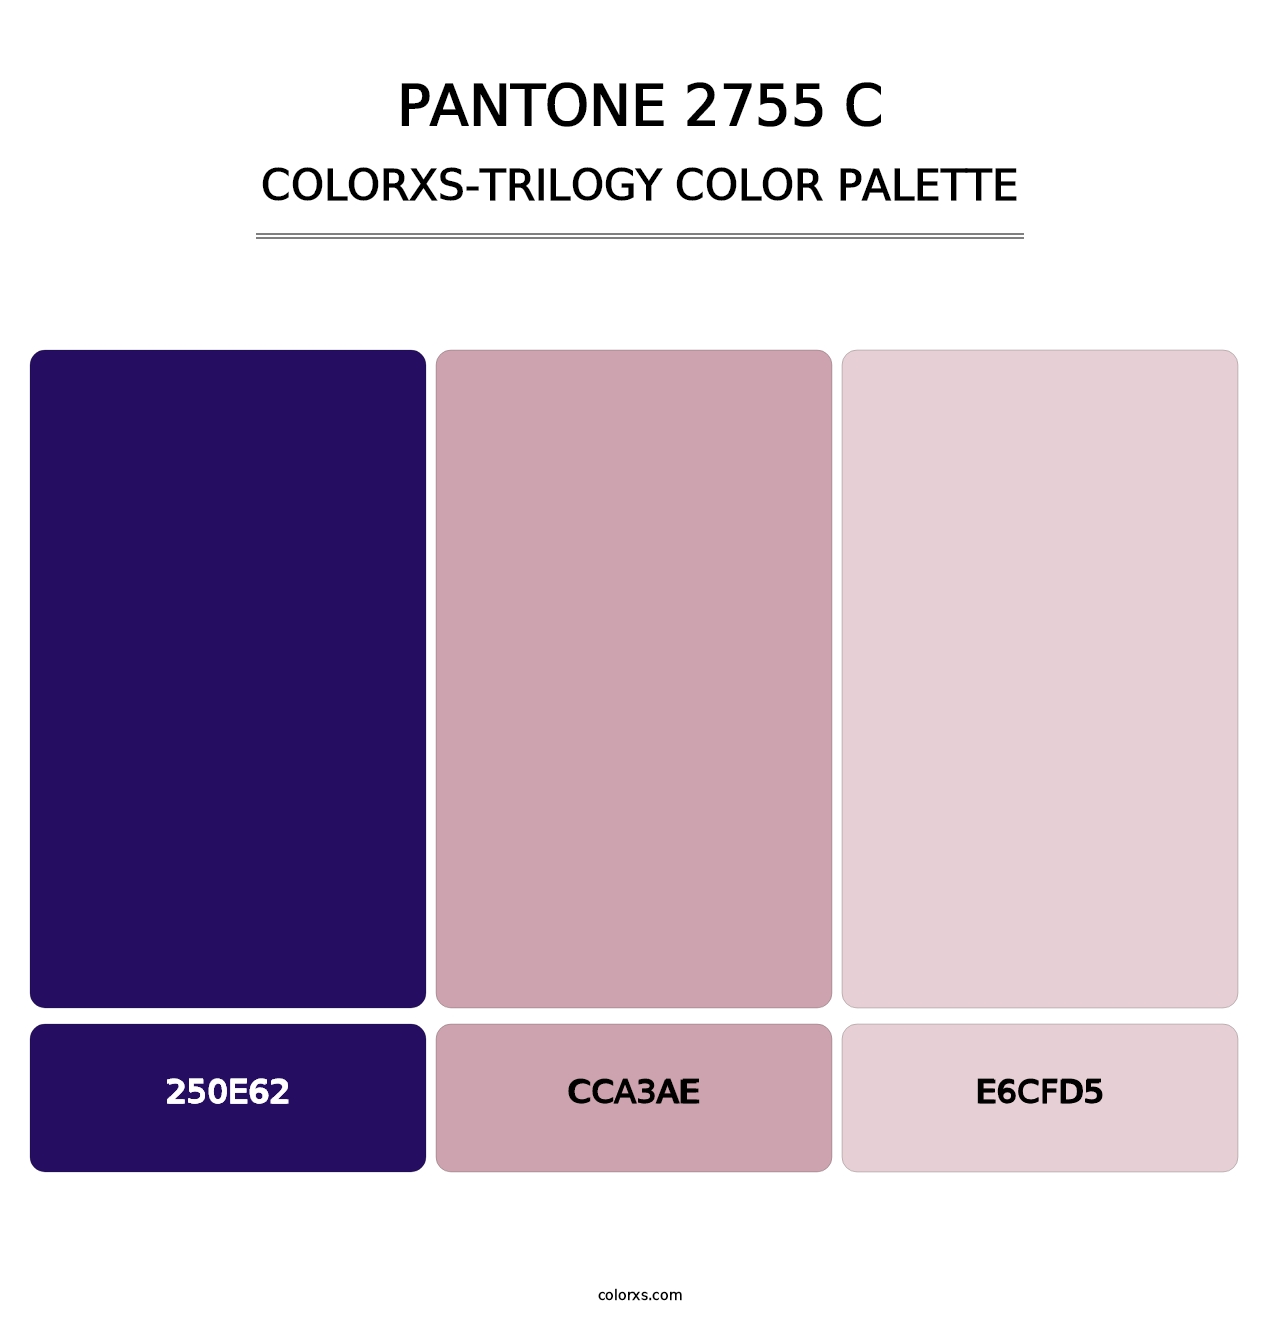 PANTONE 2755 C - Colorxs Trilogy Palette